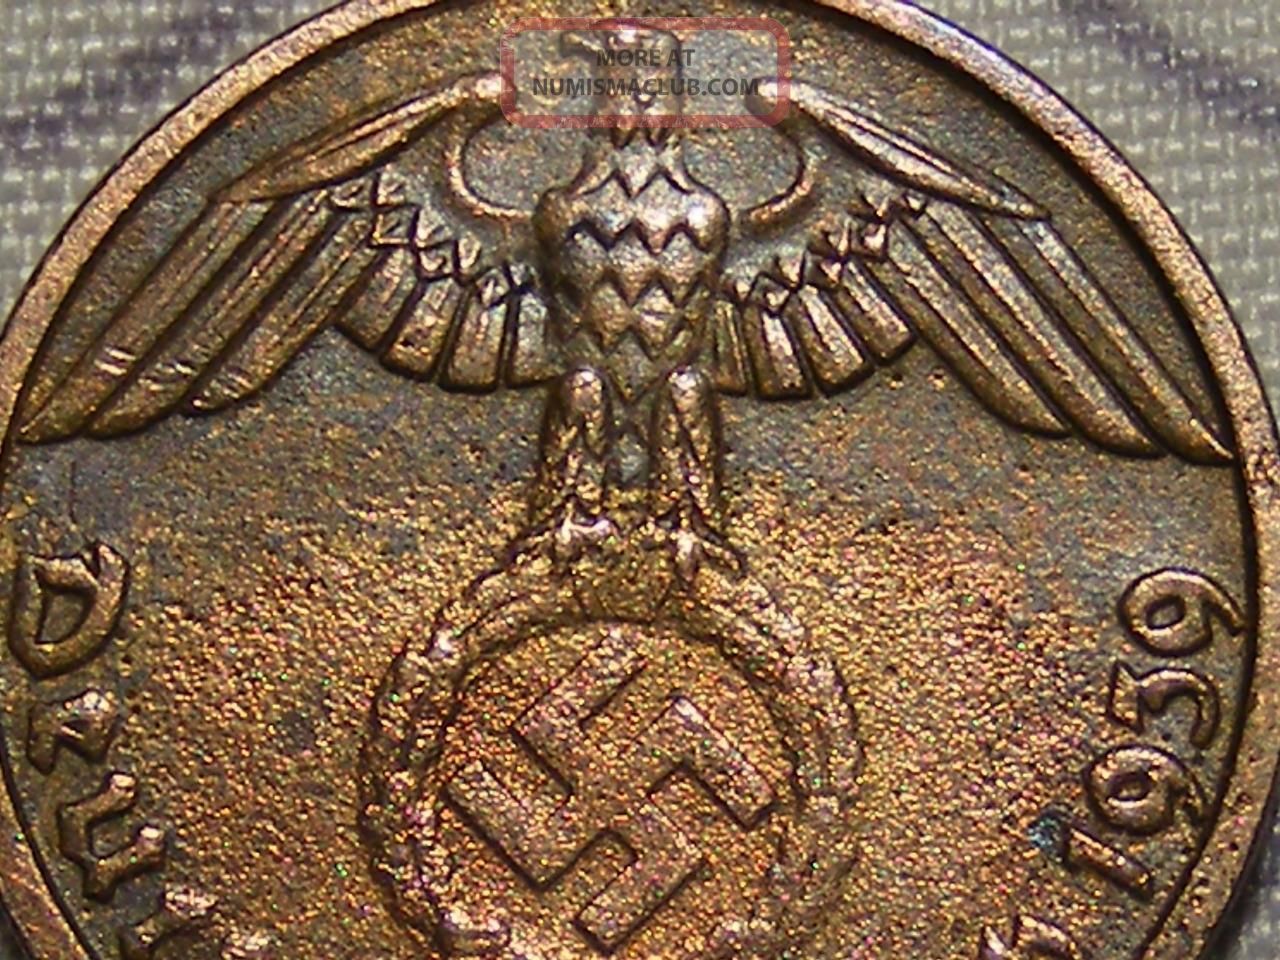 1939 Wwii Nazi Hitler Germany 3rd Reich Munich 1 Reichspfennig Copper War Coin Germany photo